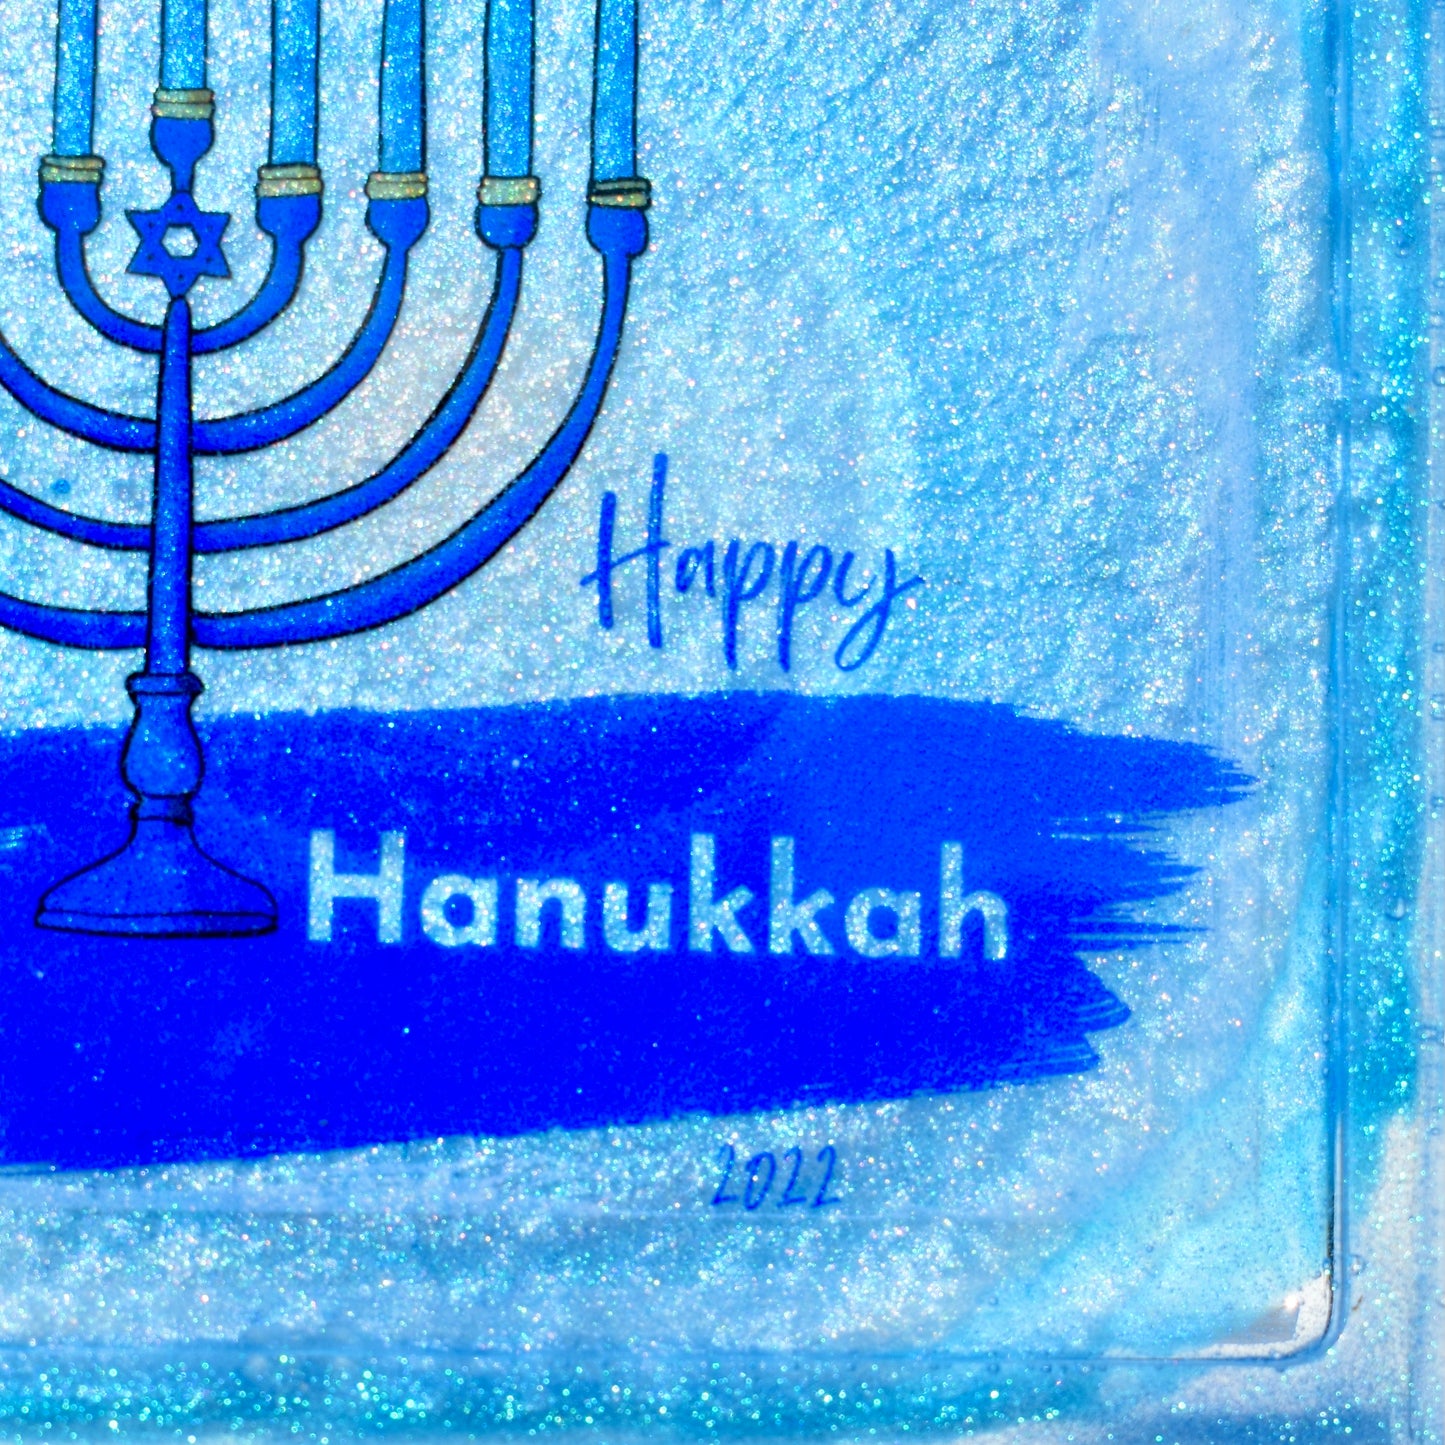 Hanukkah Themed Coasters • Hanukkah Menorah Coasters • Jewish Coasters